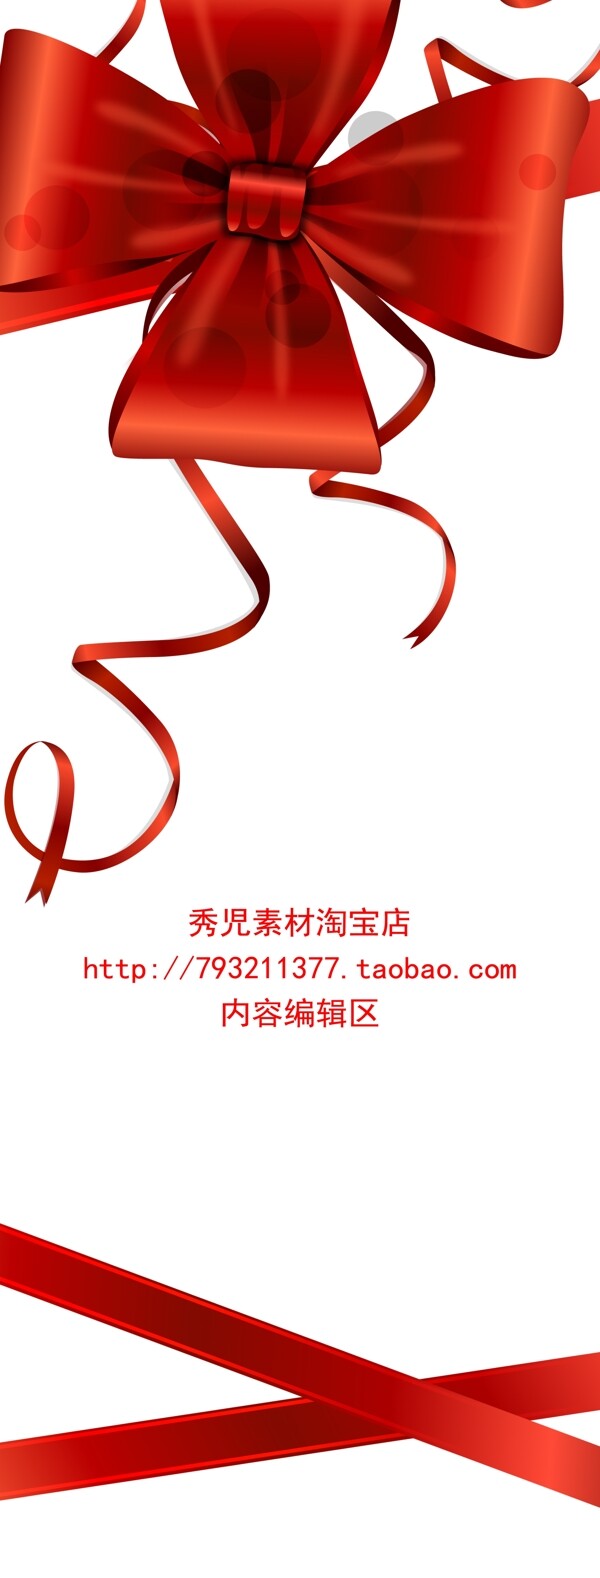 红色中国结展架模板素材海报画面